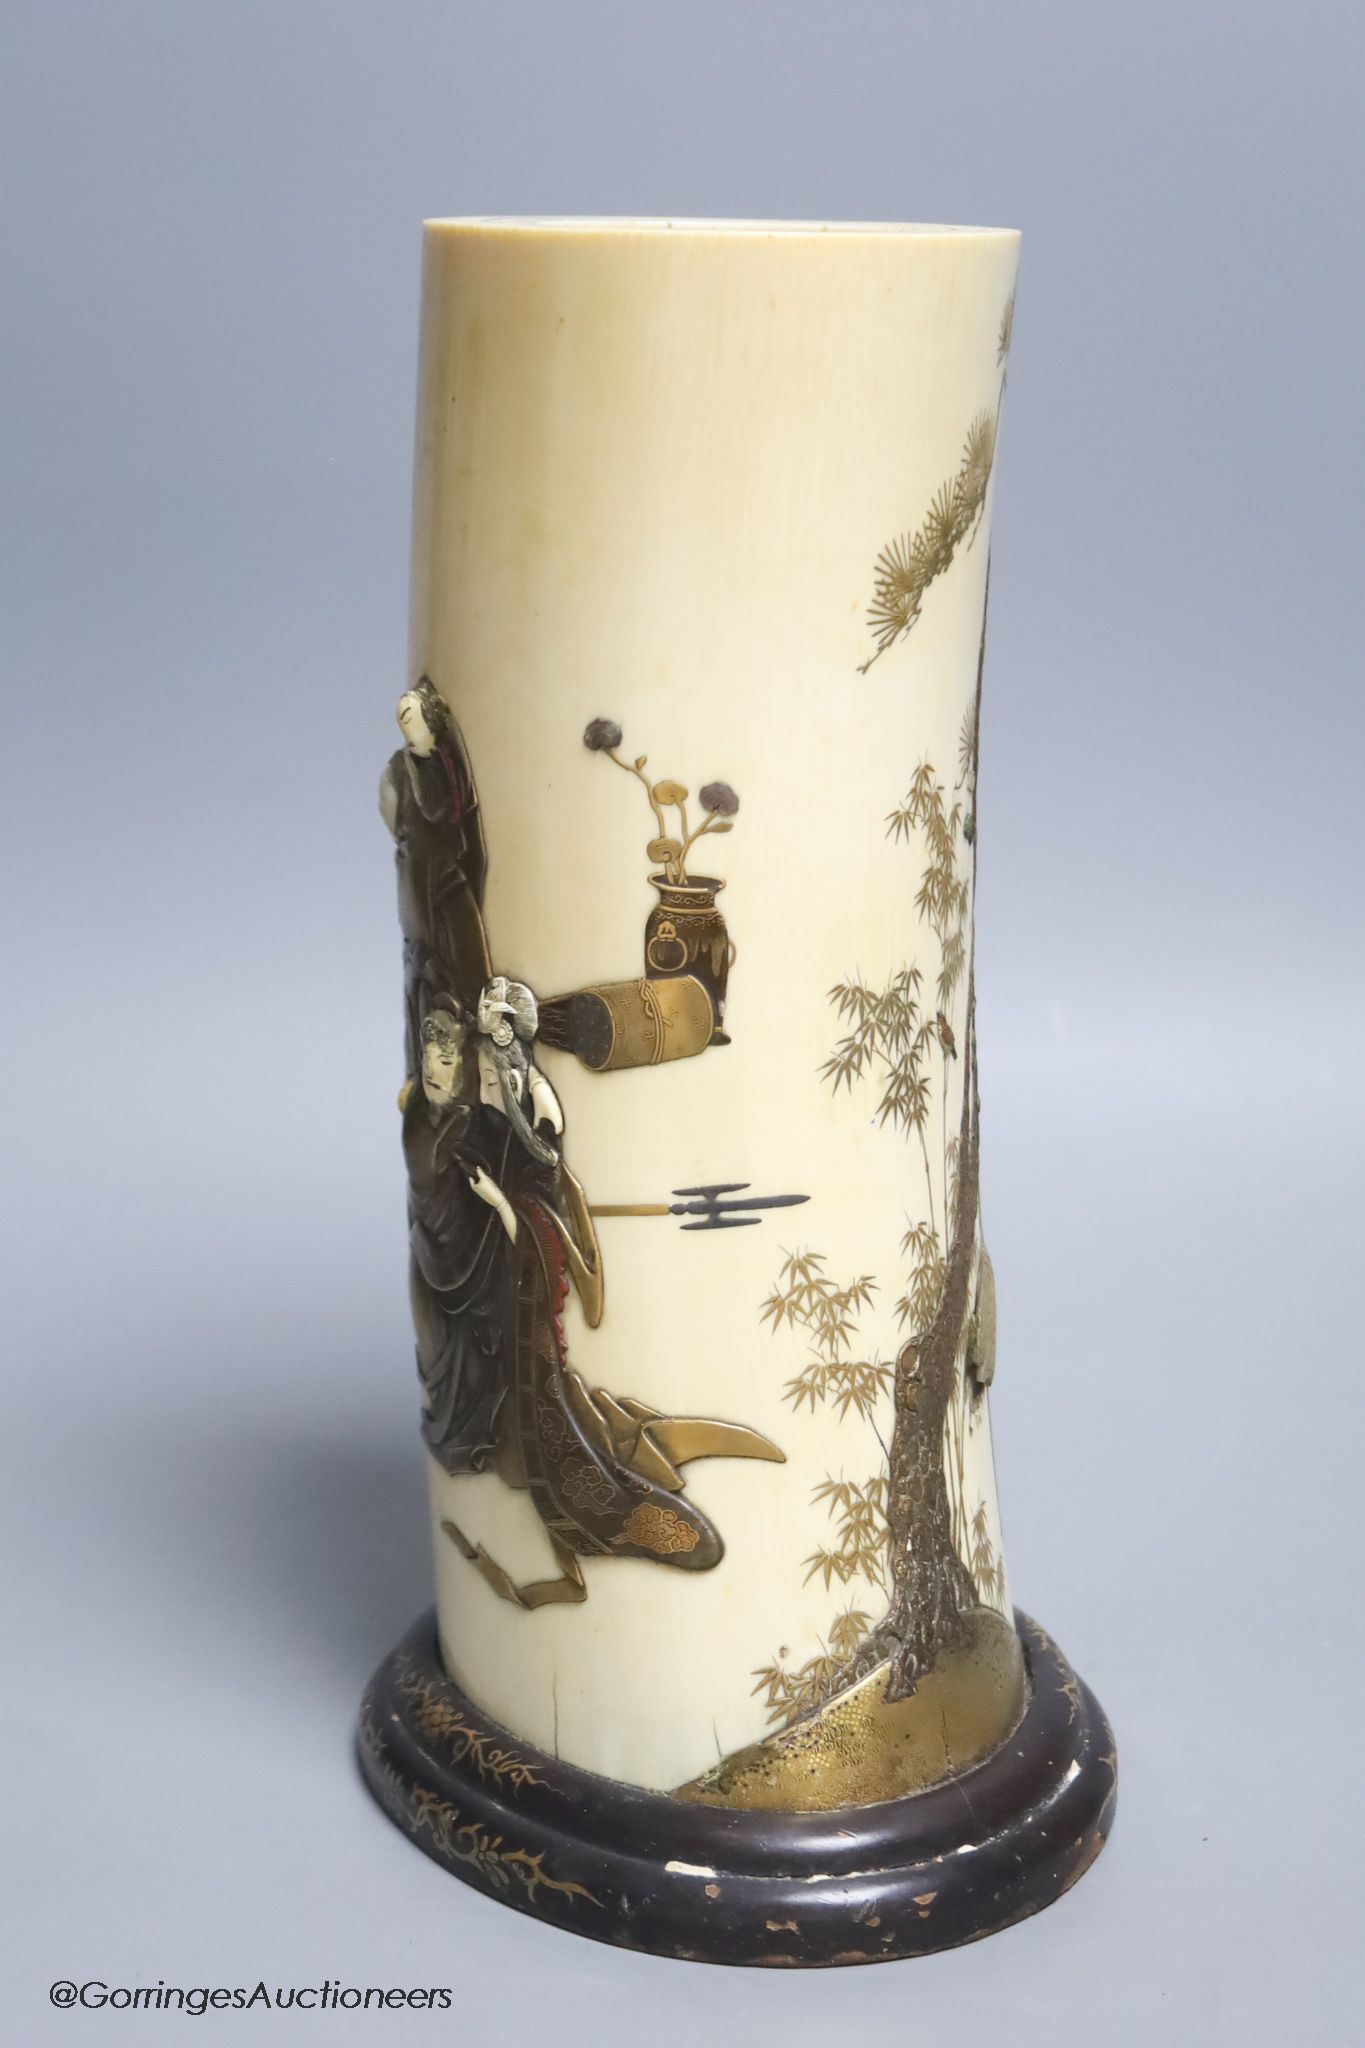 A Japanese Meiji period Shibayama ivory tusk vase, 28cm